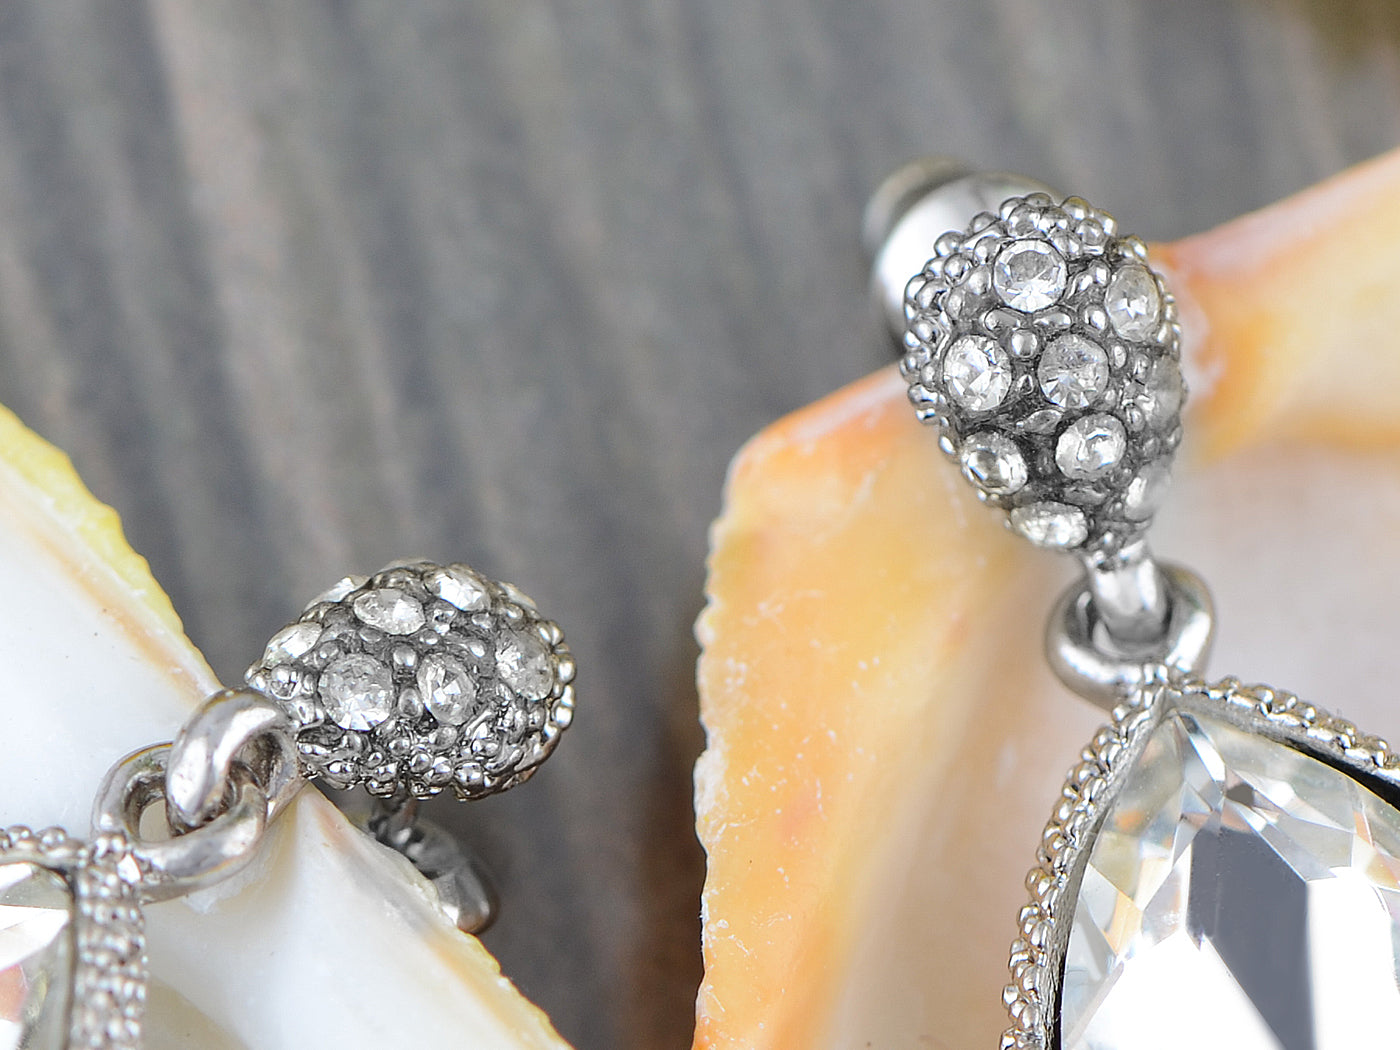 Swarovski Crystal Element Silver Teardrop Rain Chandelier Dangle Earrings